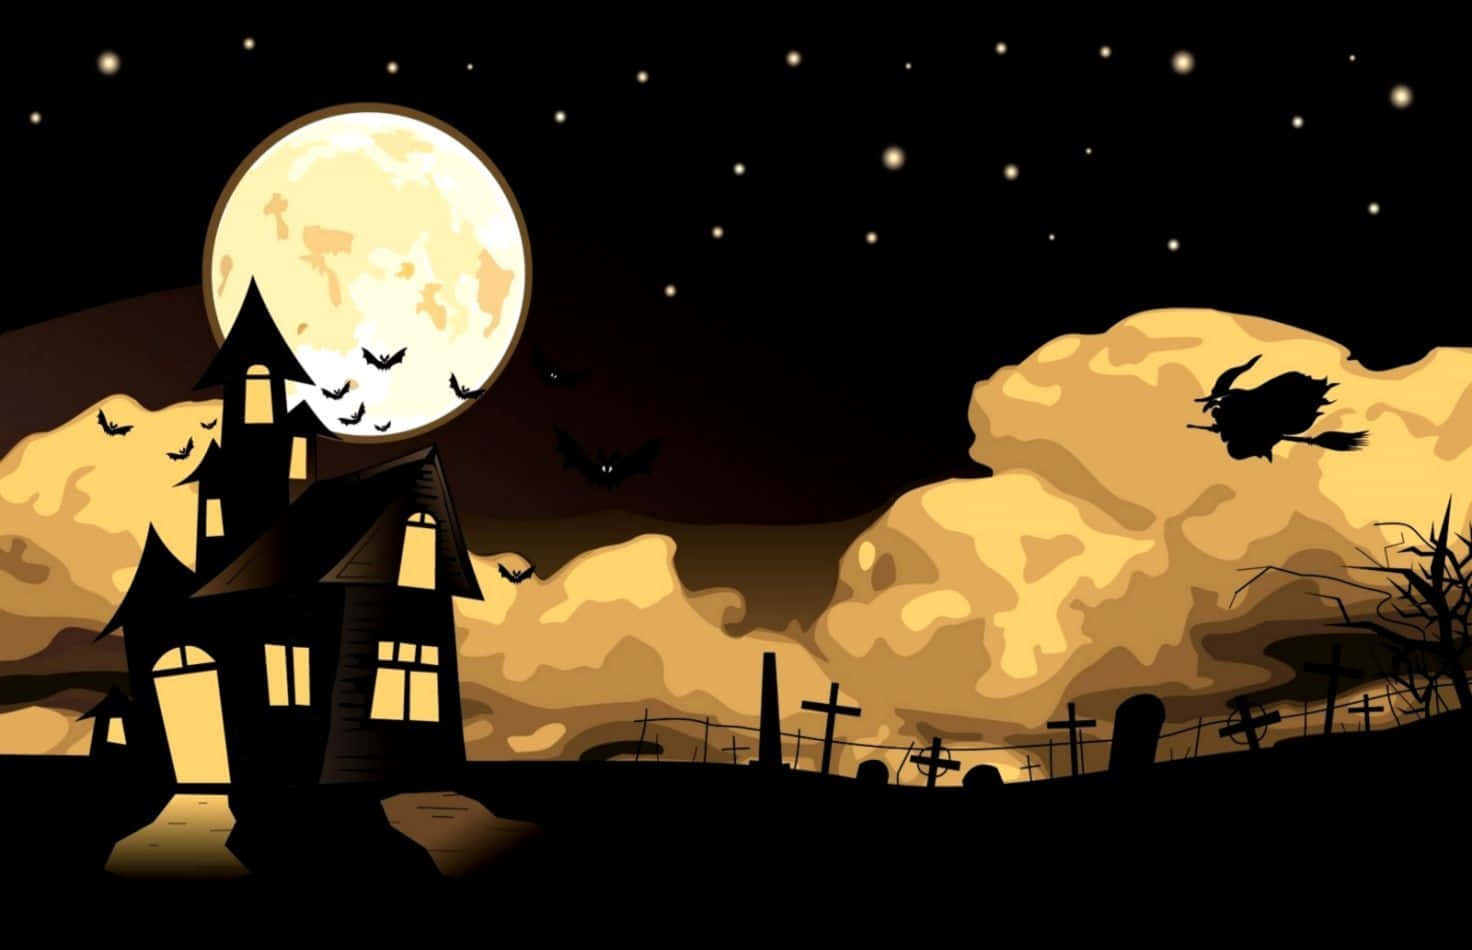 Imagende Halloween Linda De Una Bruja En Un Castillo Bajo La Luna Llena.